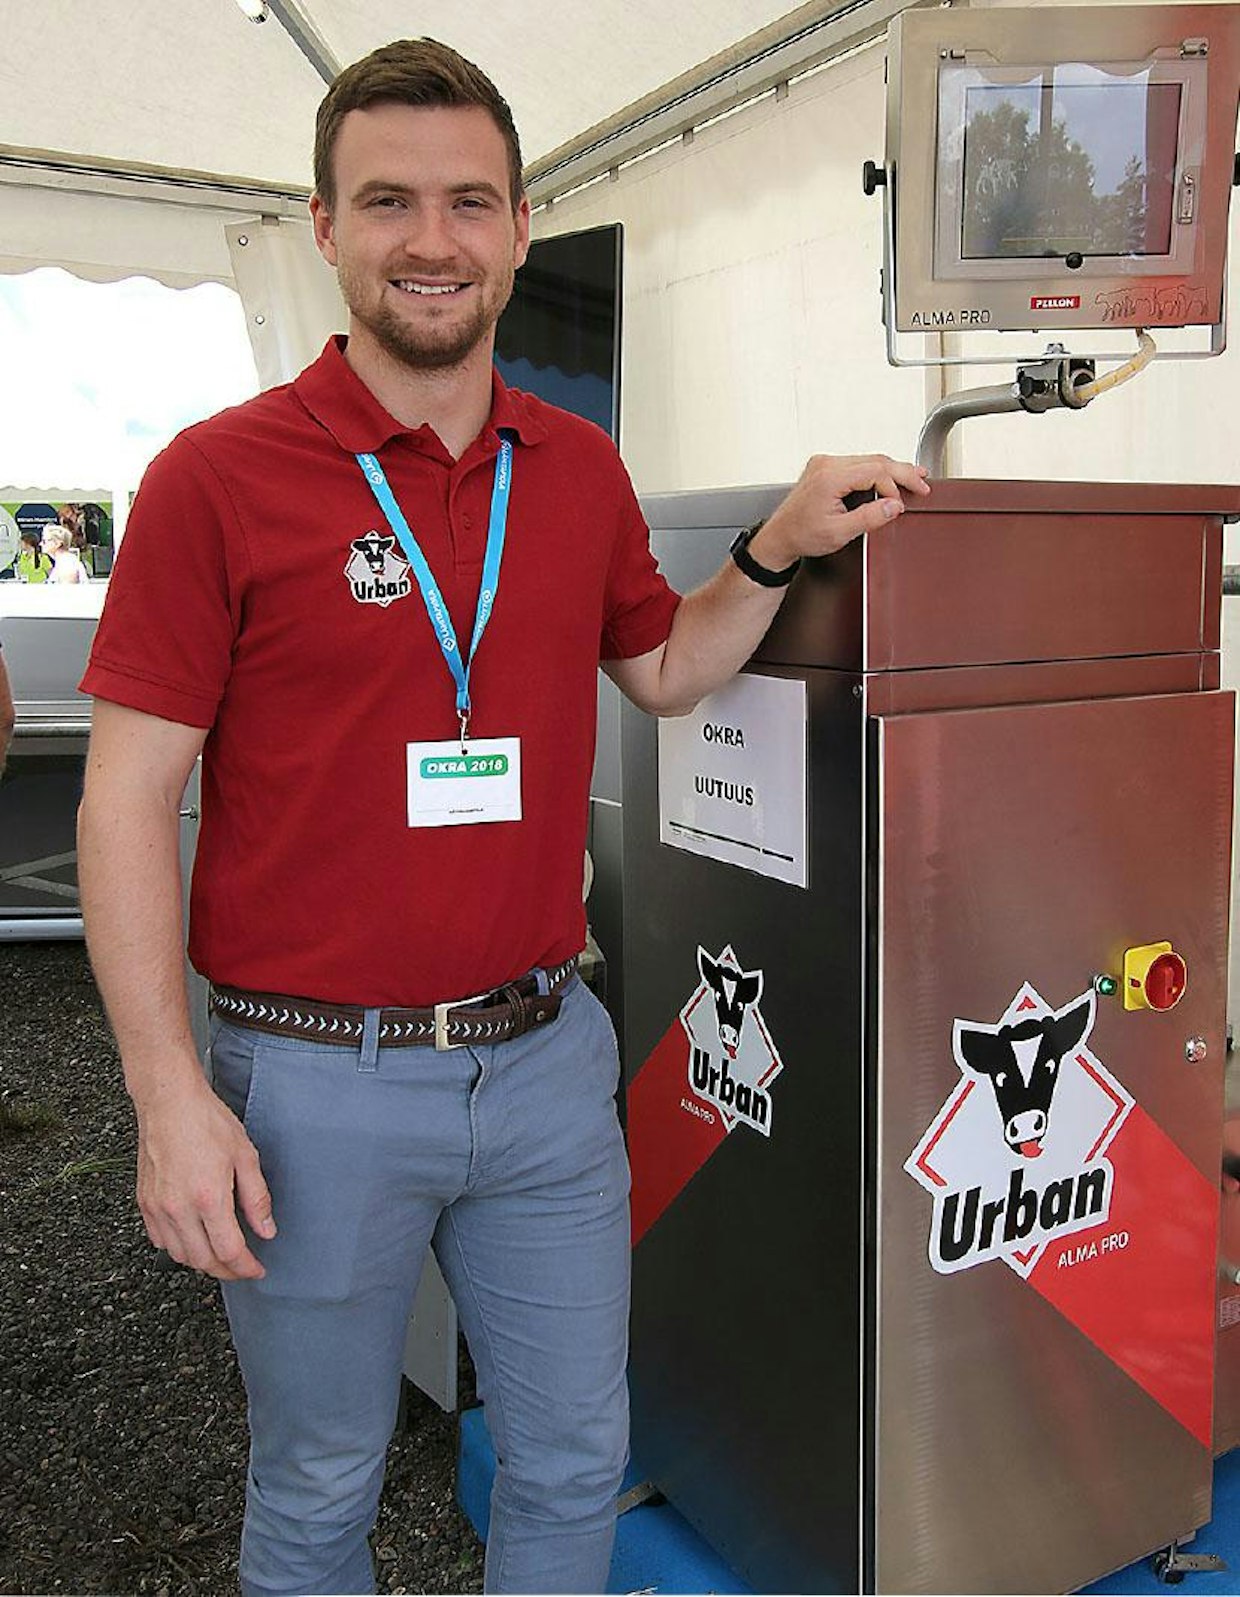 Pellon Groupin myynnissä oleva Urban-vasikanjuottoautomaatit kehittyvät edelleen. Urbanin tuotepäällikkö Joshua Hirneiss esitteli uutta Alma Pro-mallia, joka pystyy juottamaan jopa 120 vasikkaa. Yhteen kosketusnäytöllä ohjattavaan keskusyksikköön voidaan yhdistää 4 juottokarsinaa. Automaatin hinnaksi kerrottiin n. 14–15 000 euroa (alv 0 %) varustelusta riippuen. (MT)